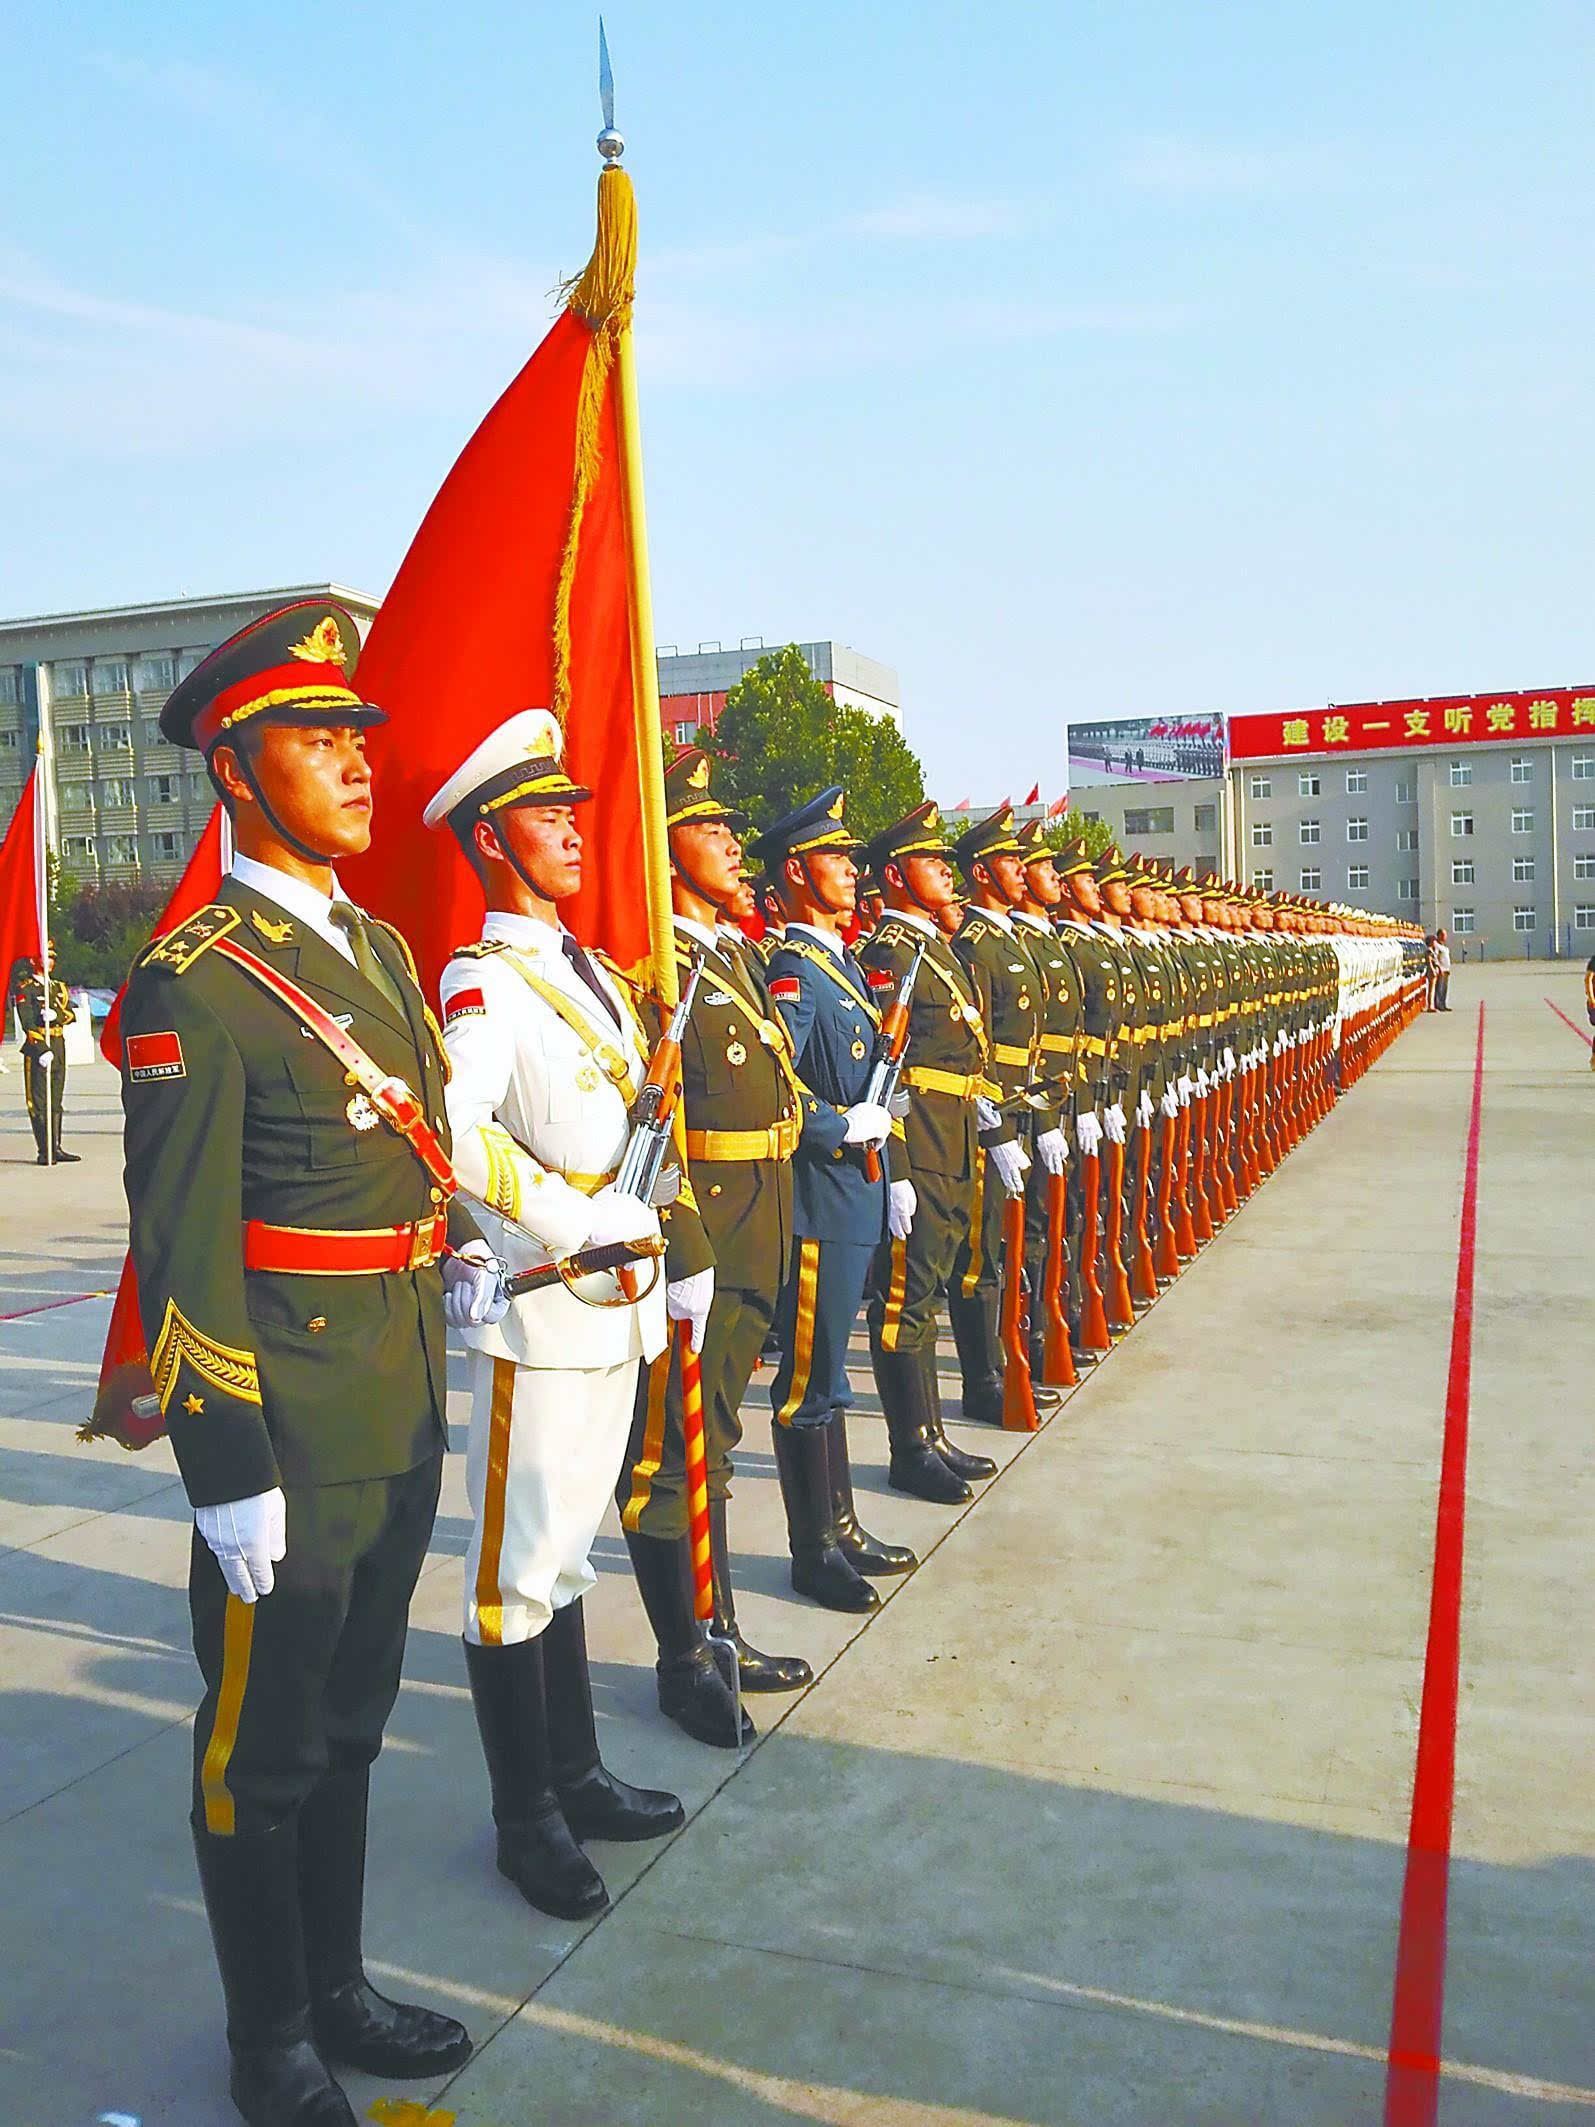 探访解放军三军仪仗队:女队员平均身高174米